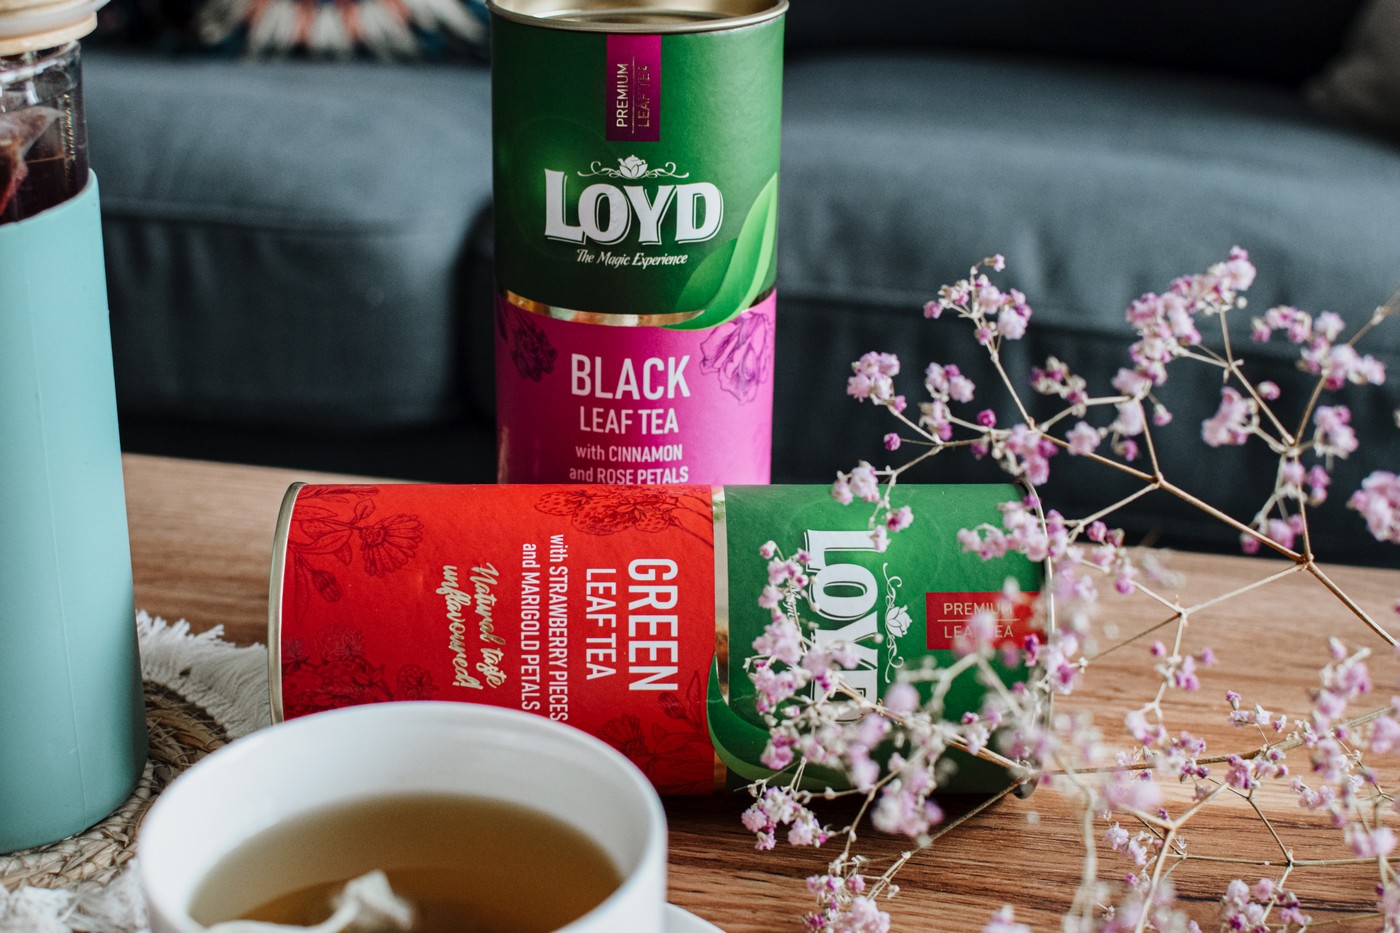 Herbata czarna liściasta z cynamonem i płatkami róży